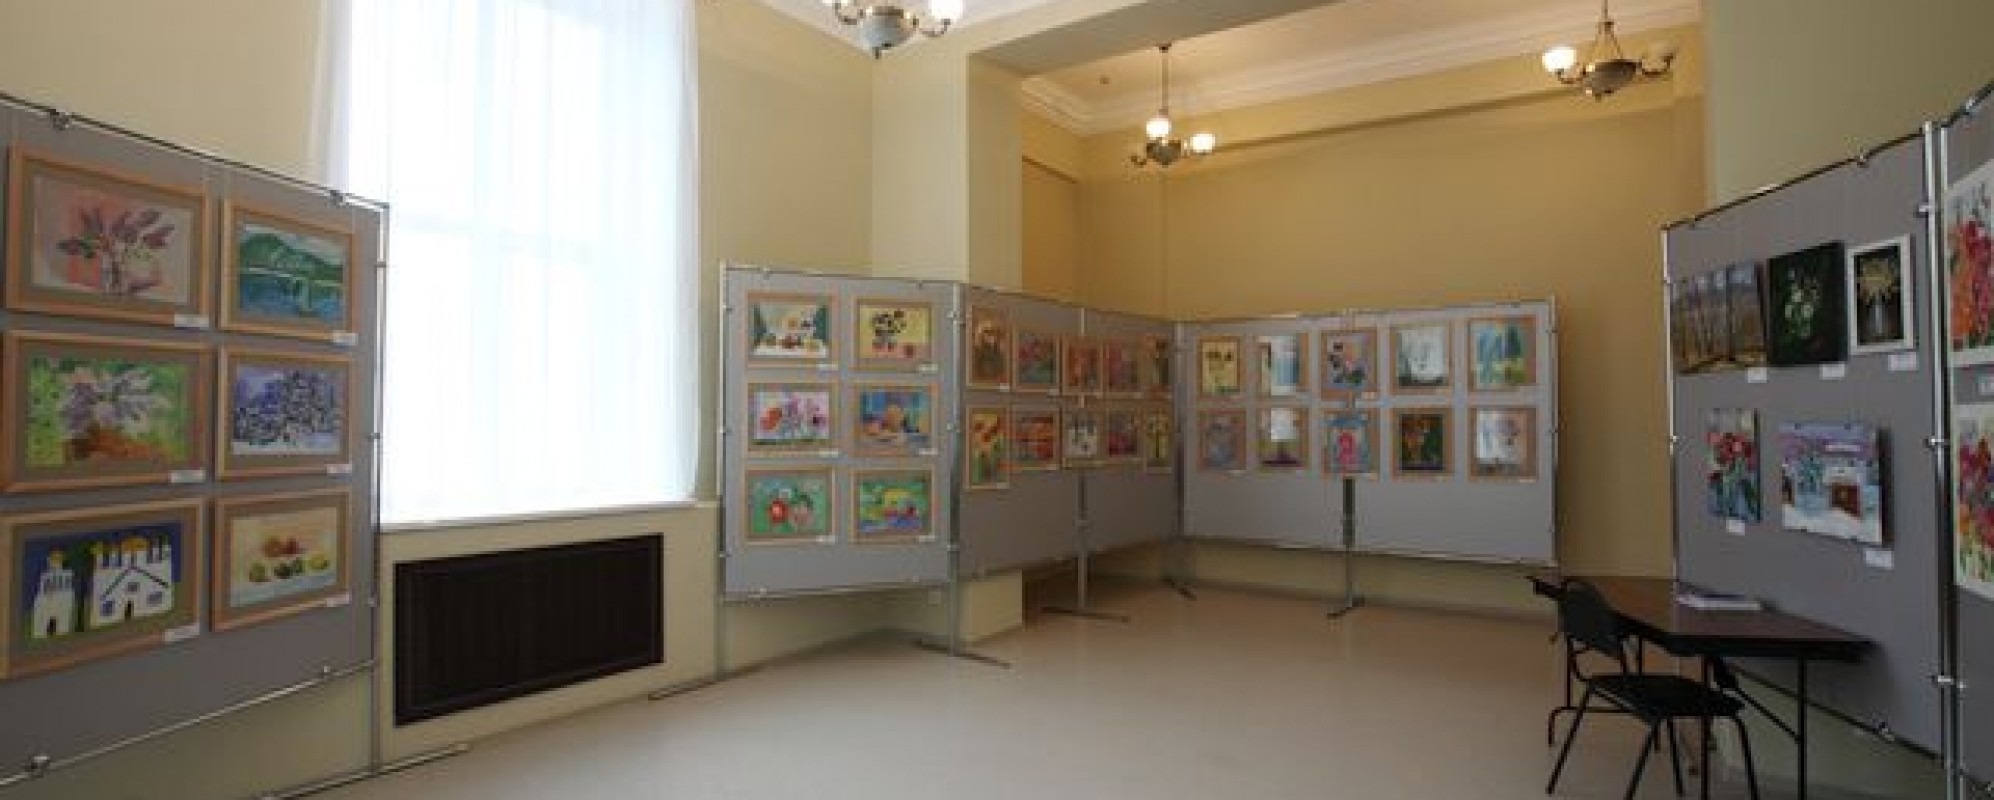 Фотографии выставочного зала Малый выставочный зал ДК Чайка